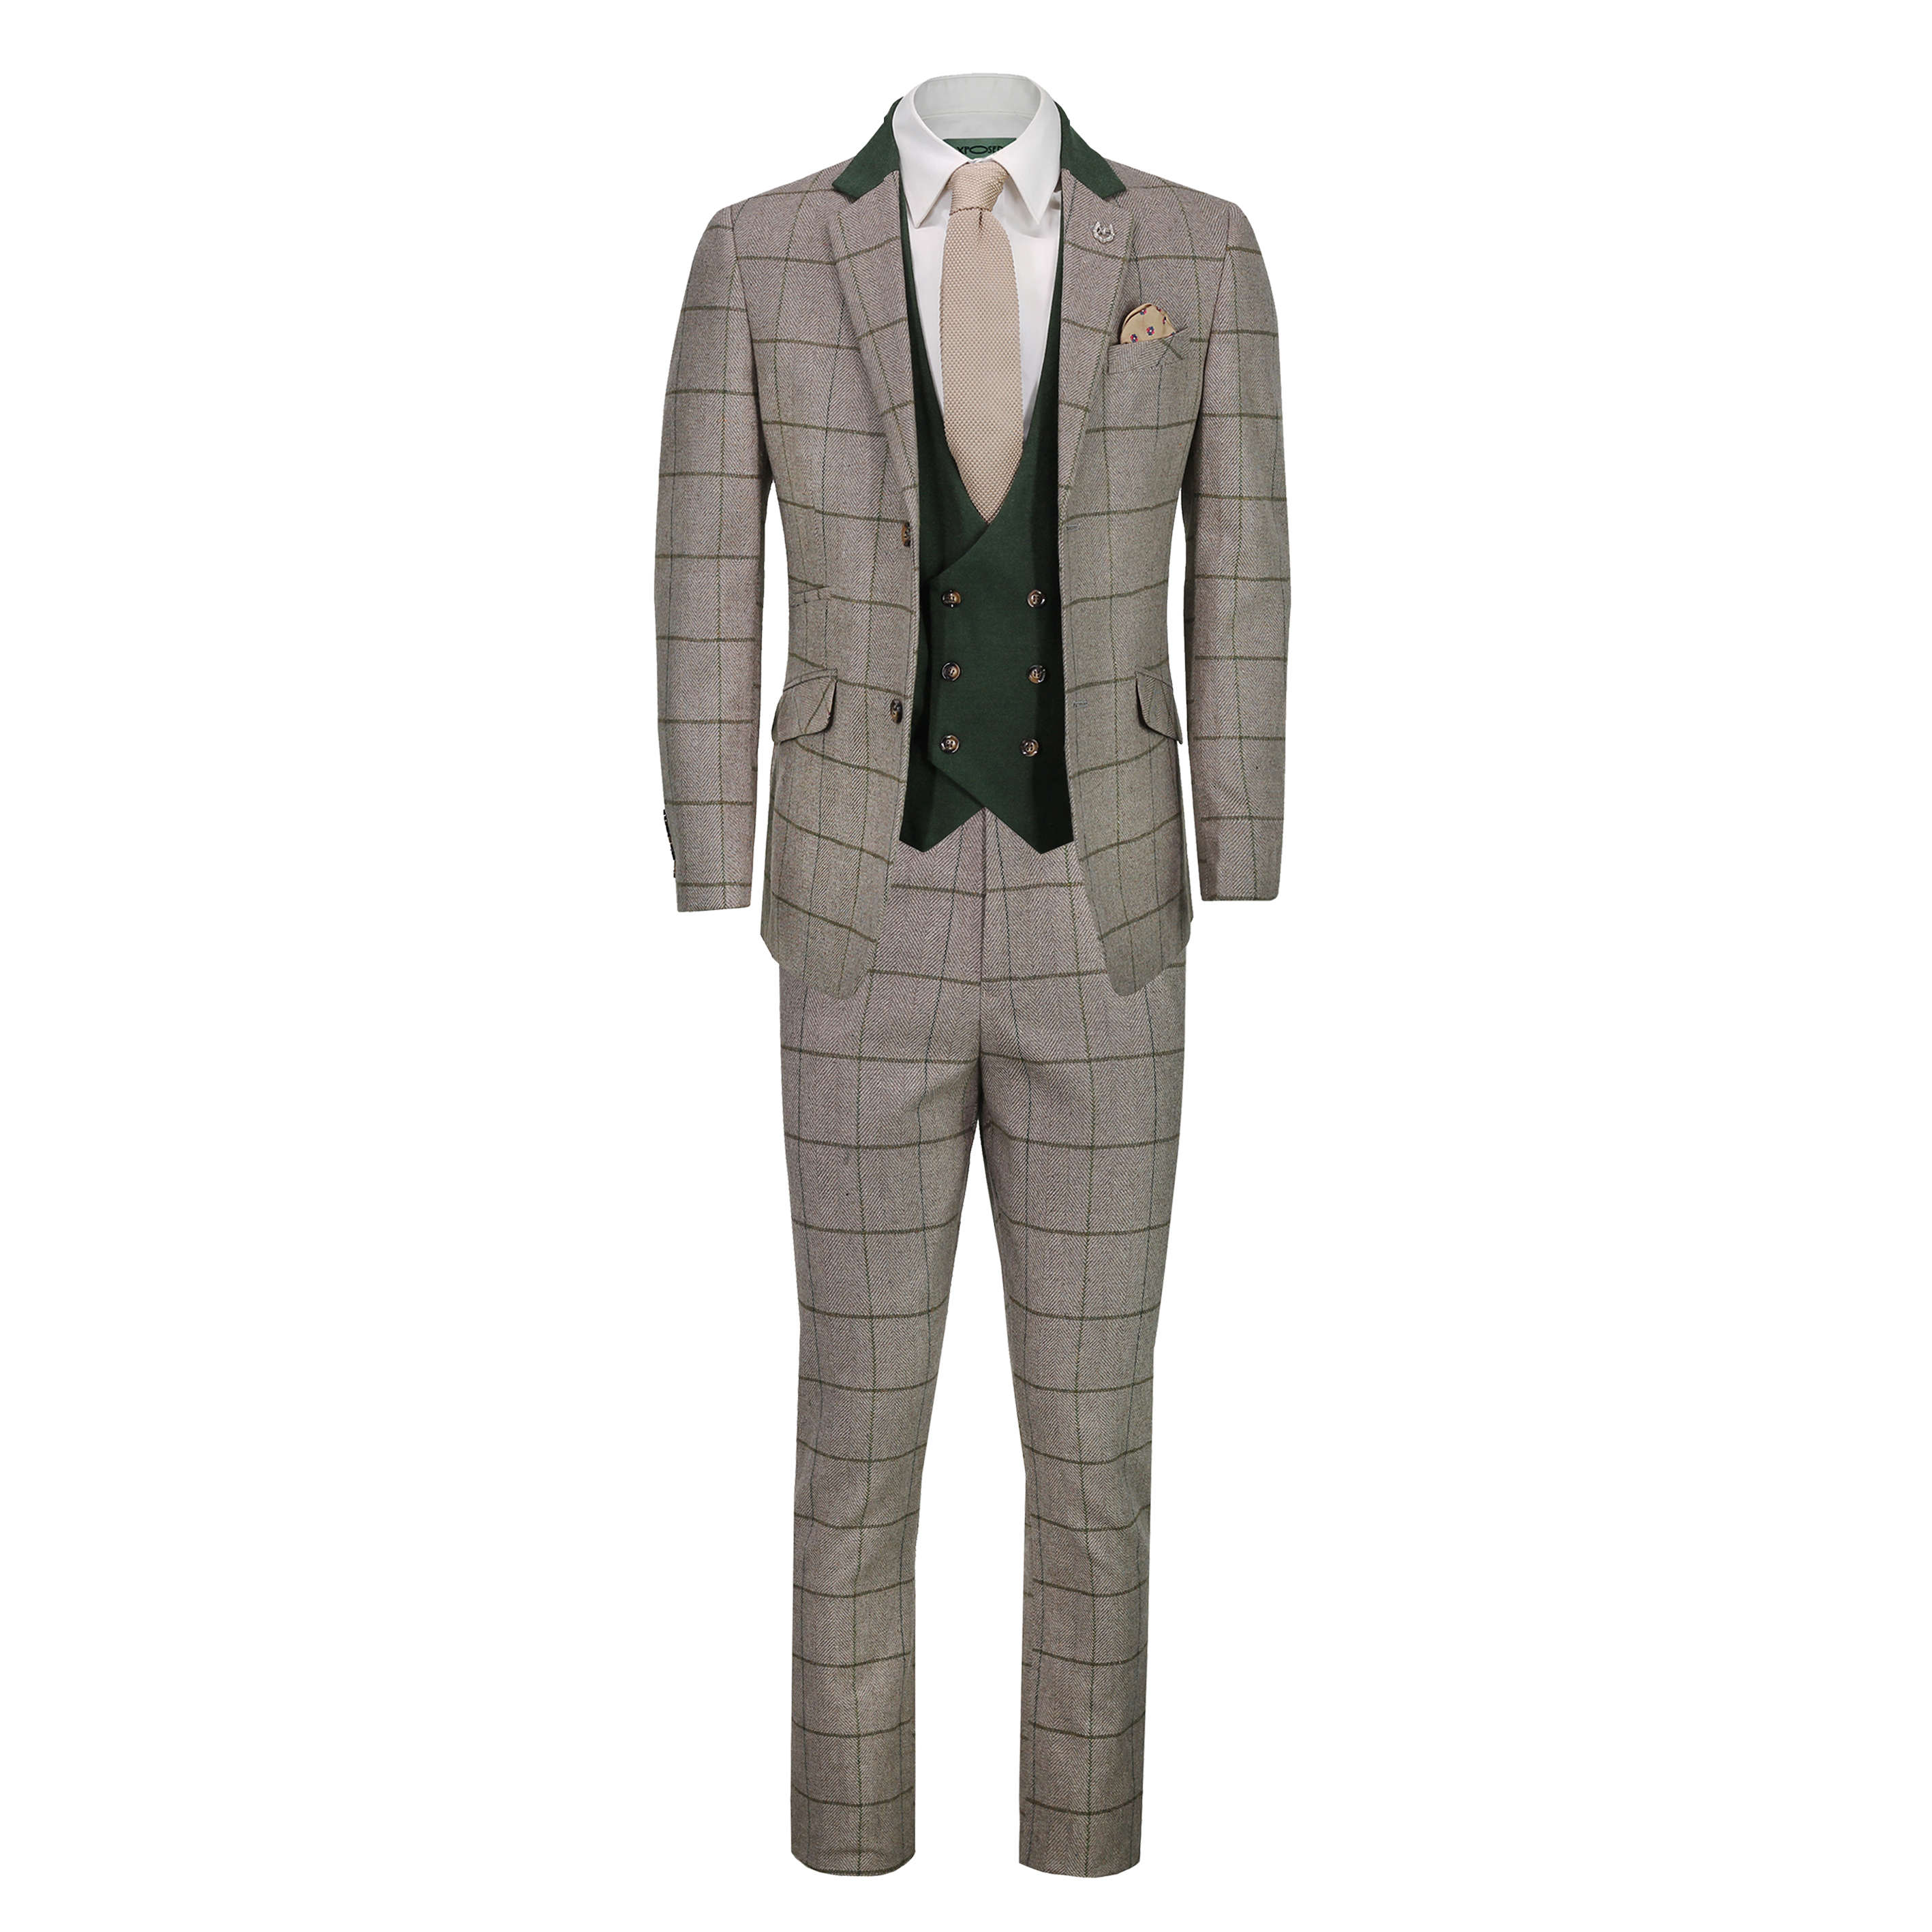 Mens Classic 3 Piece Tweed Suit Herringbone Check Smart Retro Tailored Fit Suit Ebay